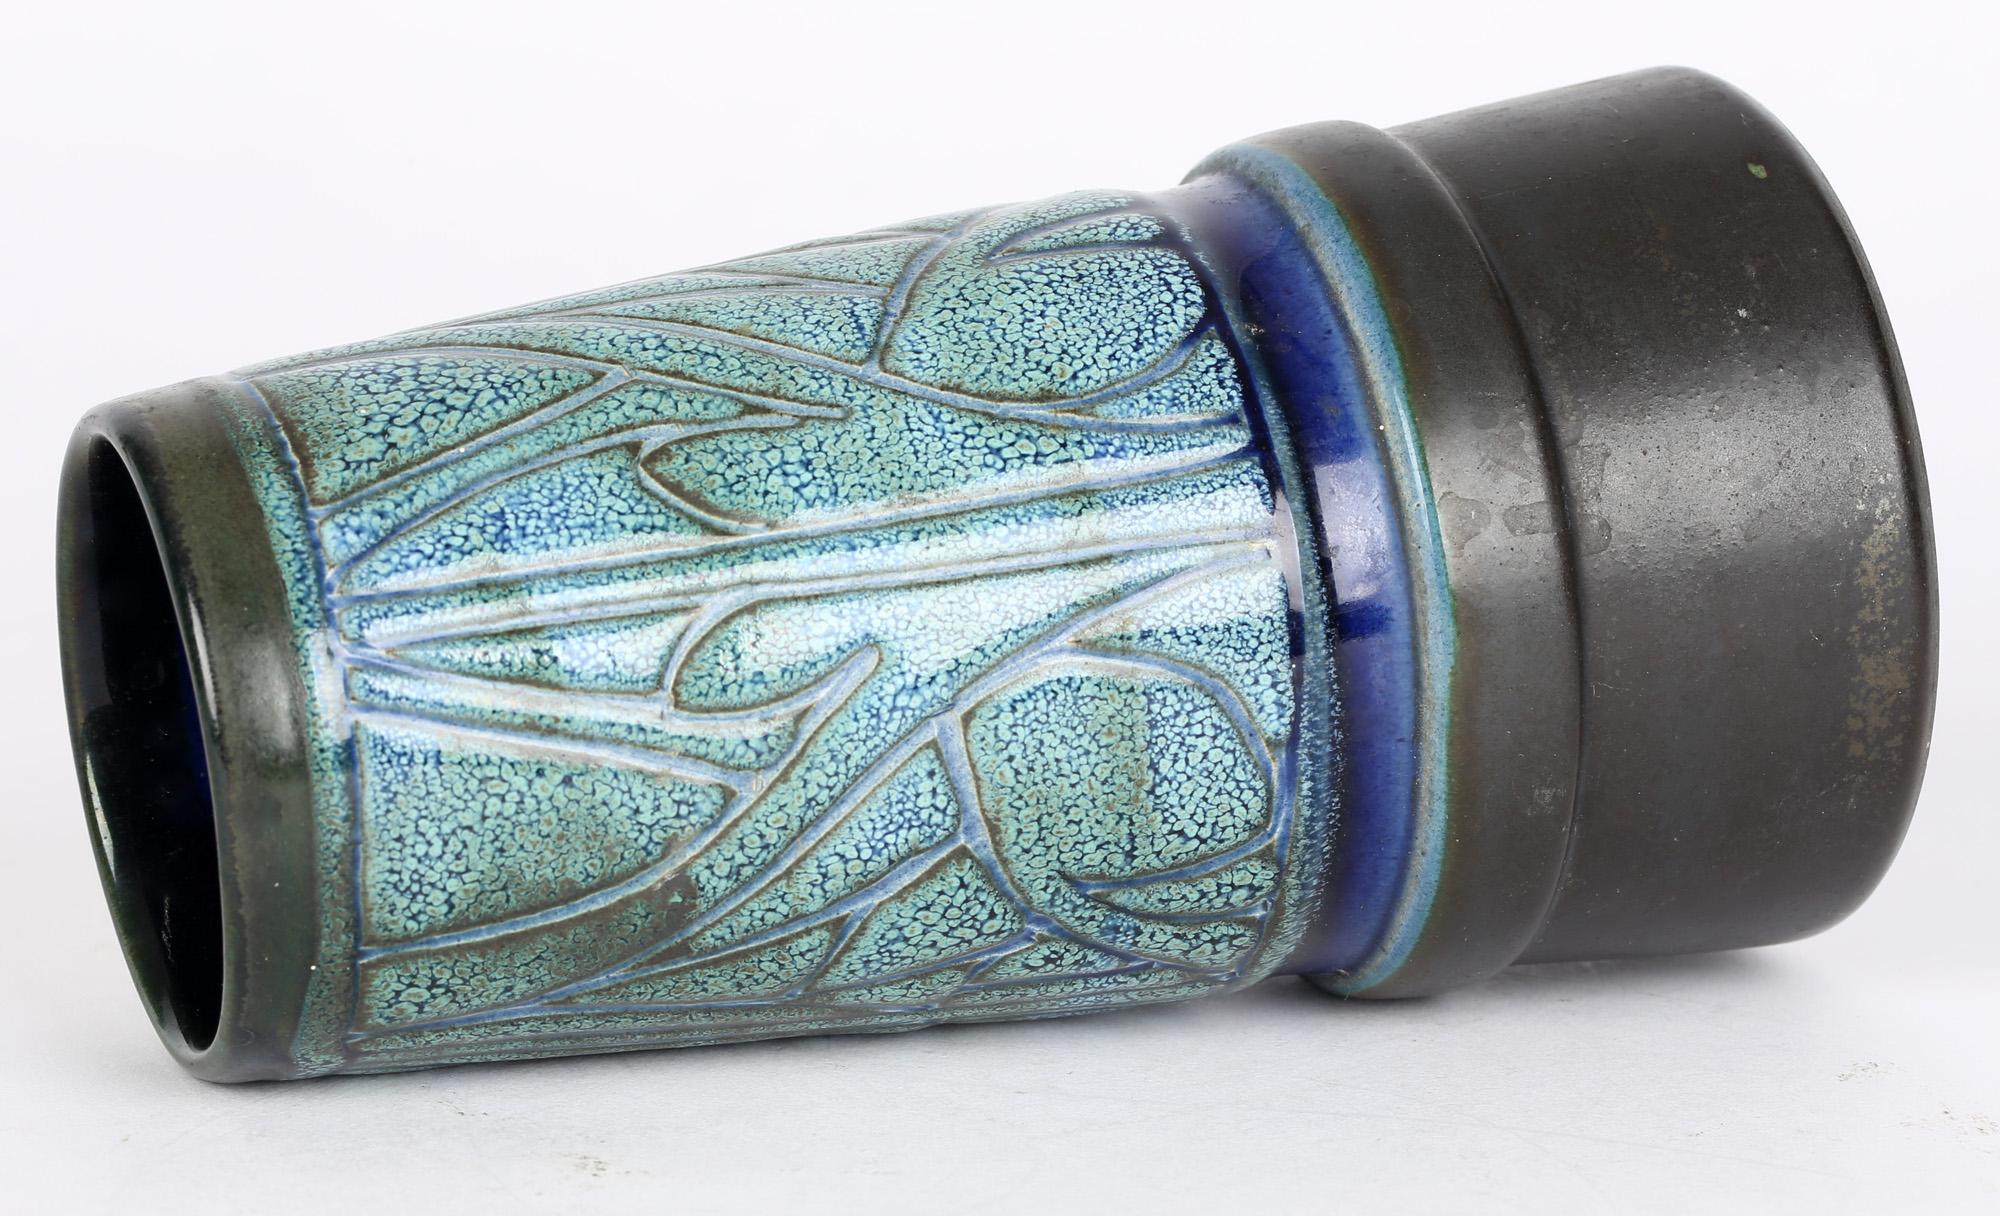 Eine stilvolle Vase aus der keltischen Studiotöpferei in Cornwall, verziert mit dem blauen Medaillon-Design von Everidge Stevens und Maggie Fisher aus der Zeit um 1970. Die in Newlyn hergestellte Vase in Form eines hohen Trichters oder Schornsteins